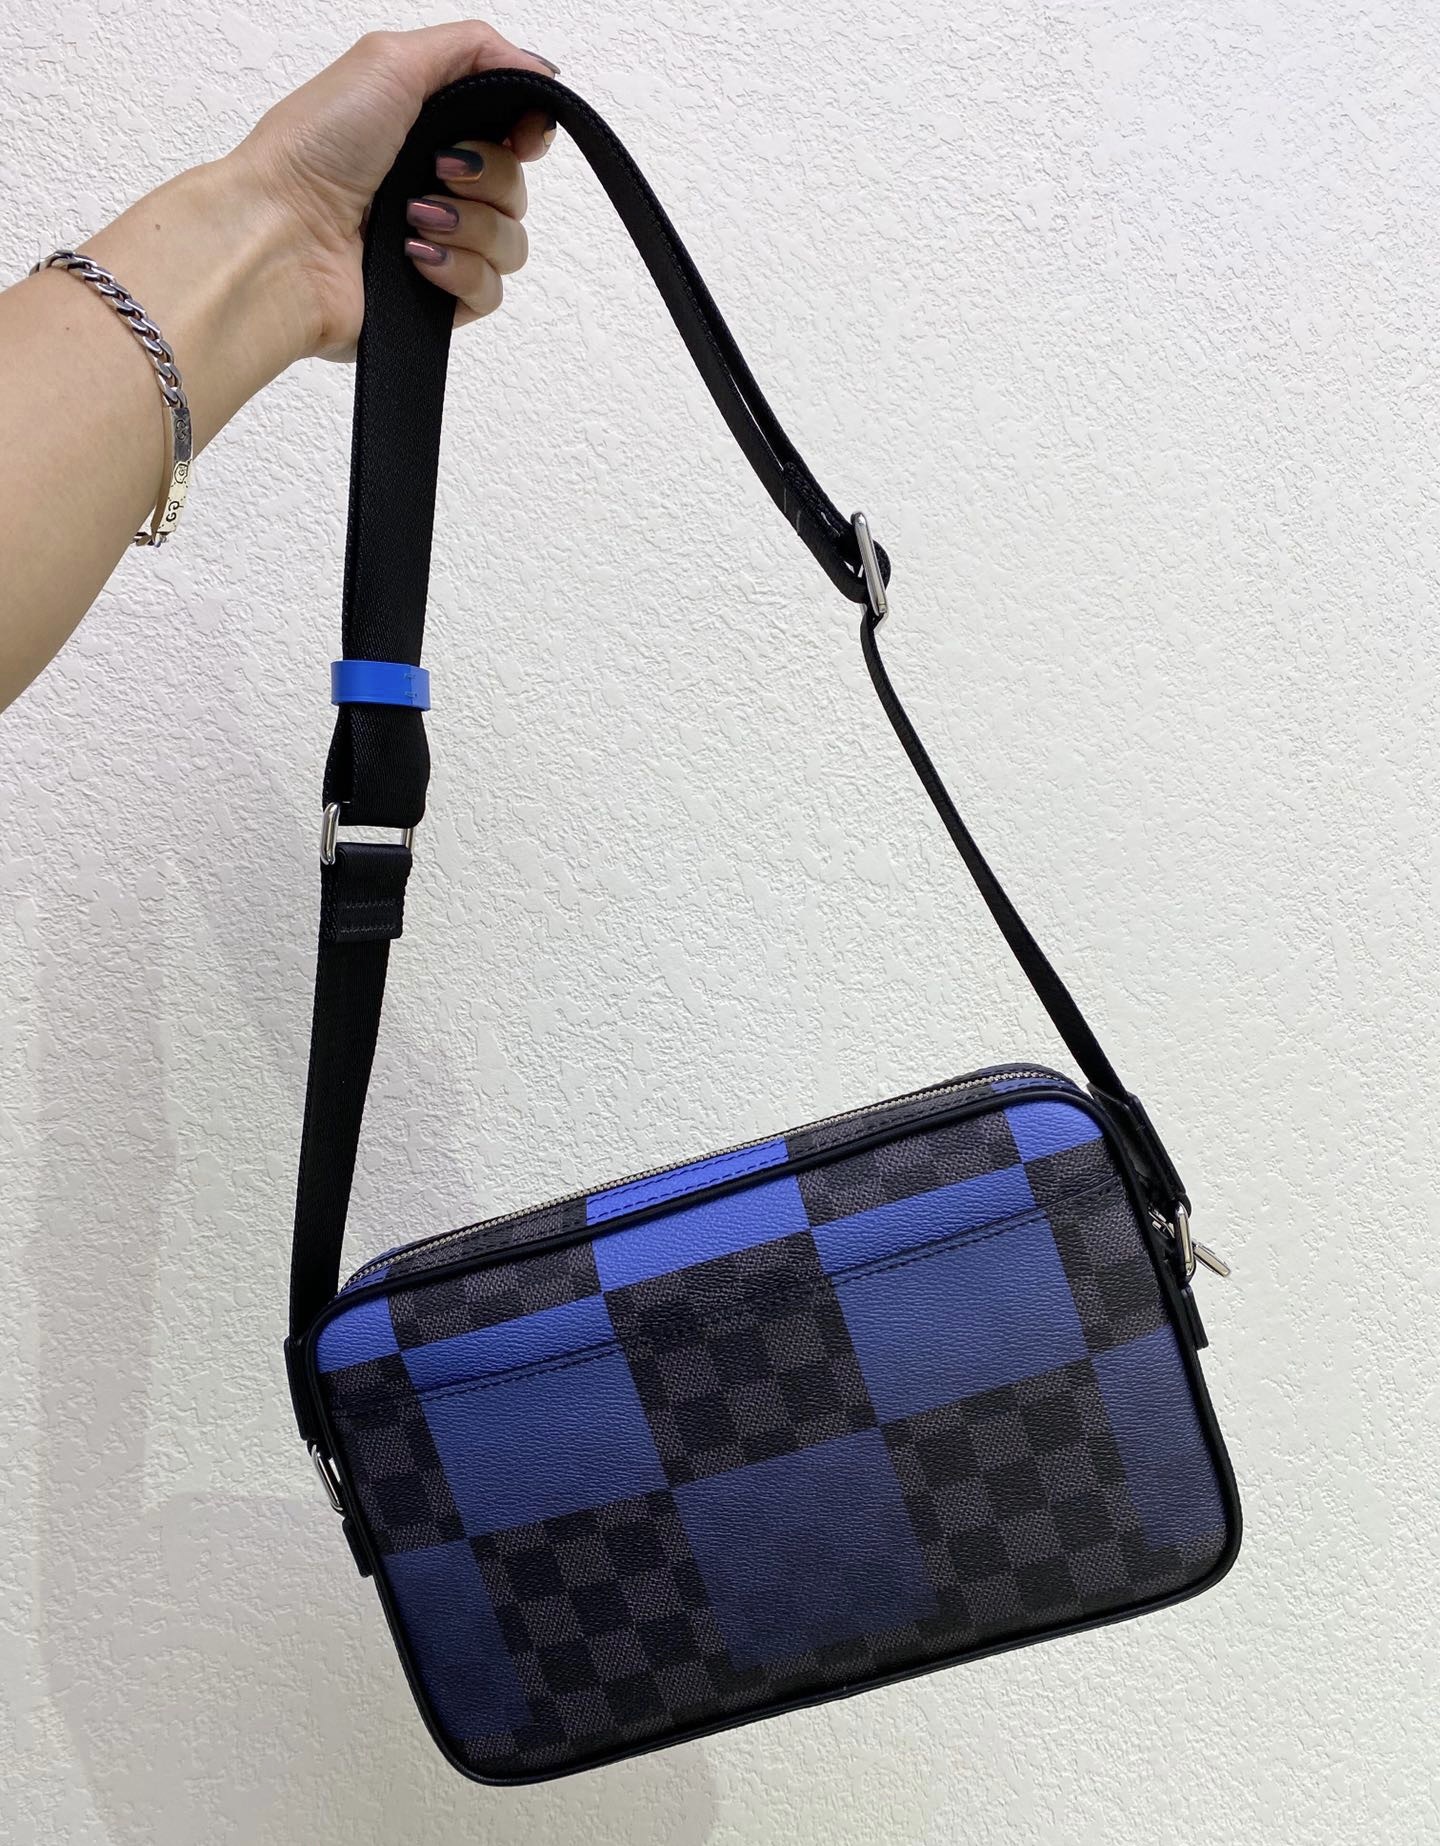 LOUIS VUITTON Louis Vuitton Alpha Messenger Shoulder Bag N40188 Damier  Graphite Canvas Leather Black